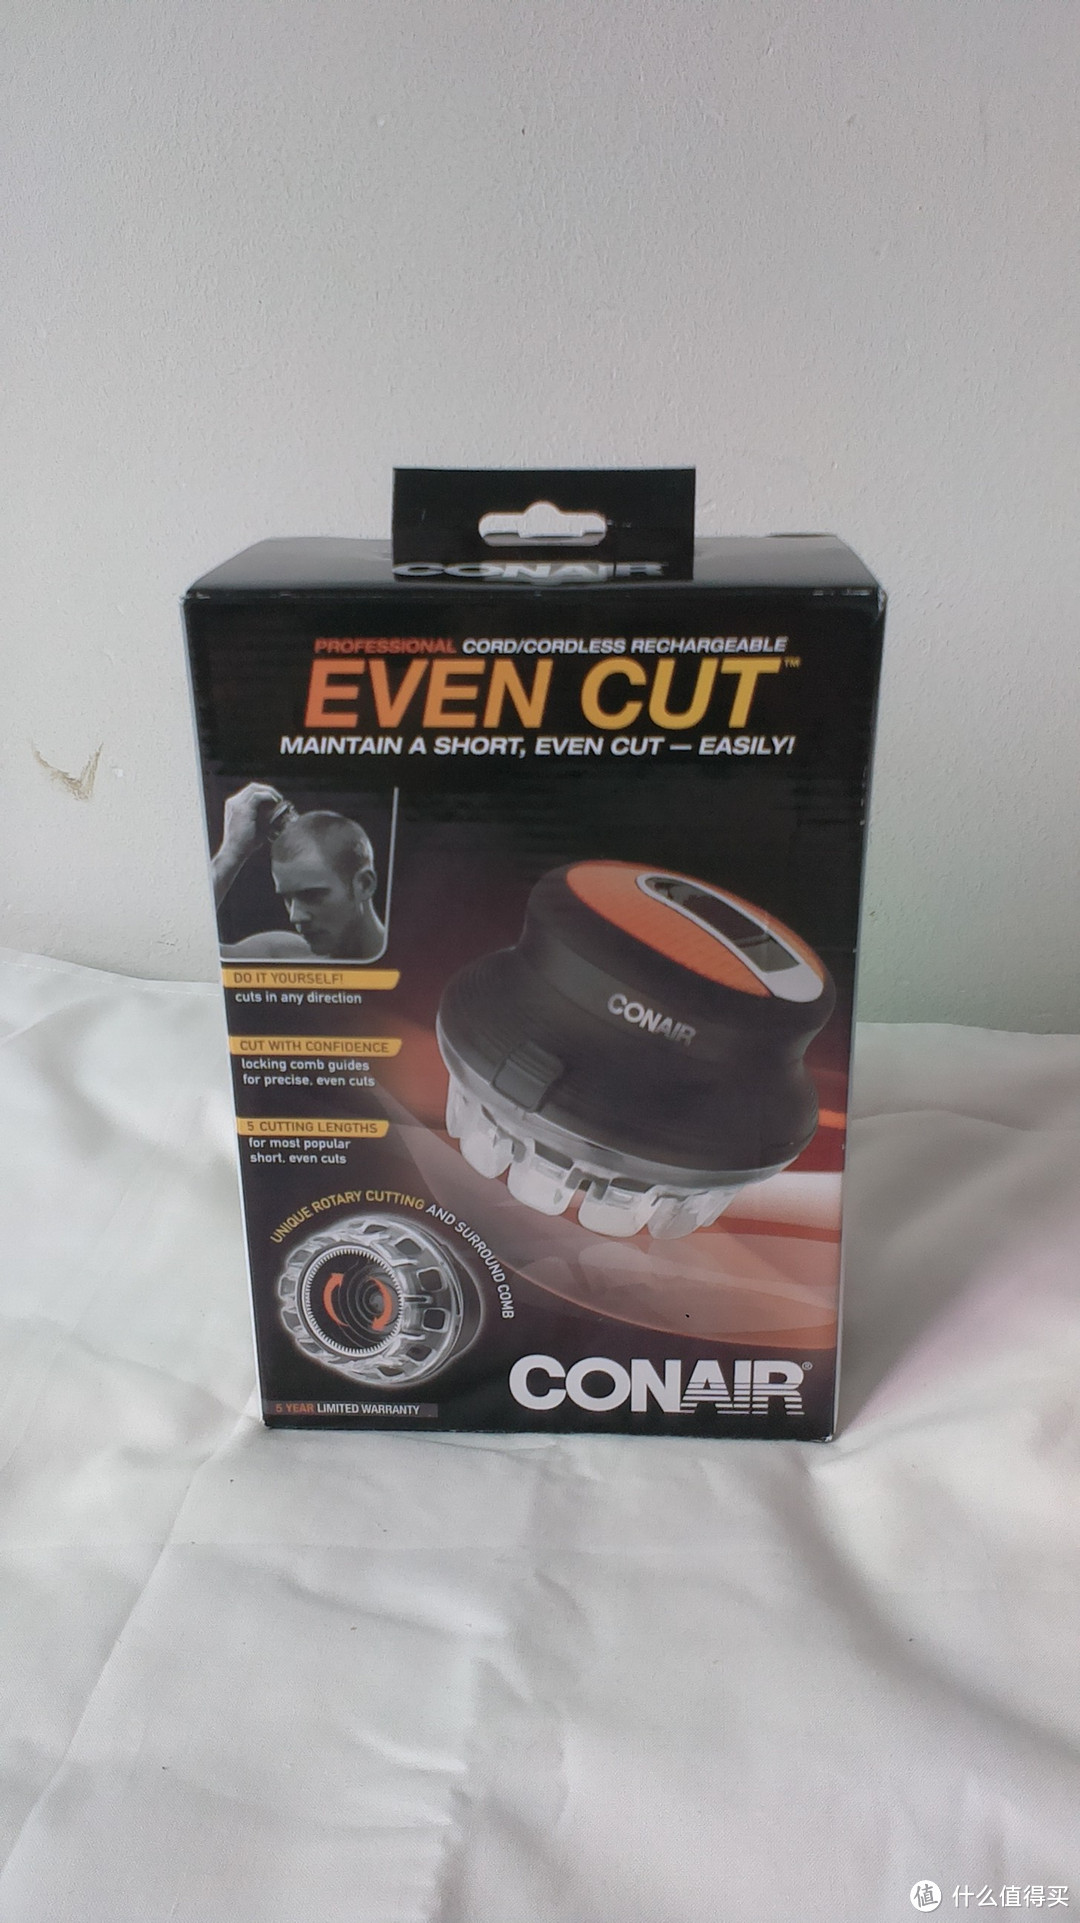 #原创新人#conair Hc900 Even Cut 男士自助理发器 开箱